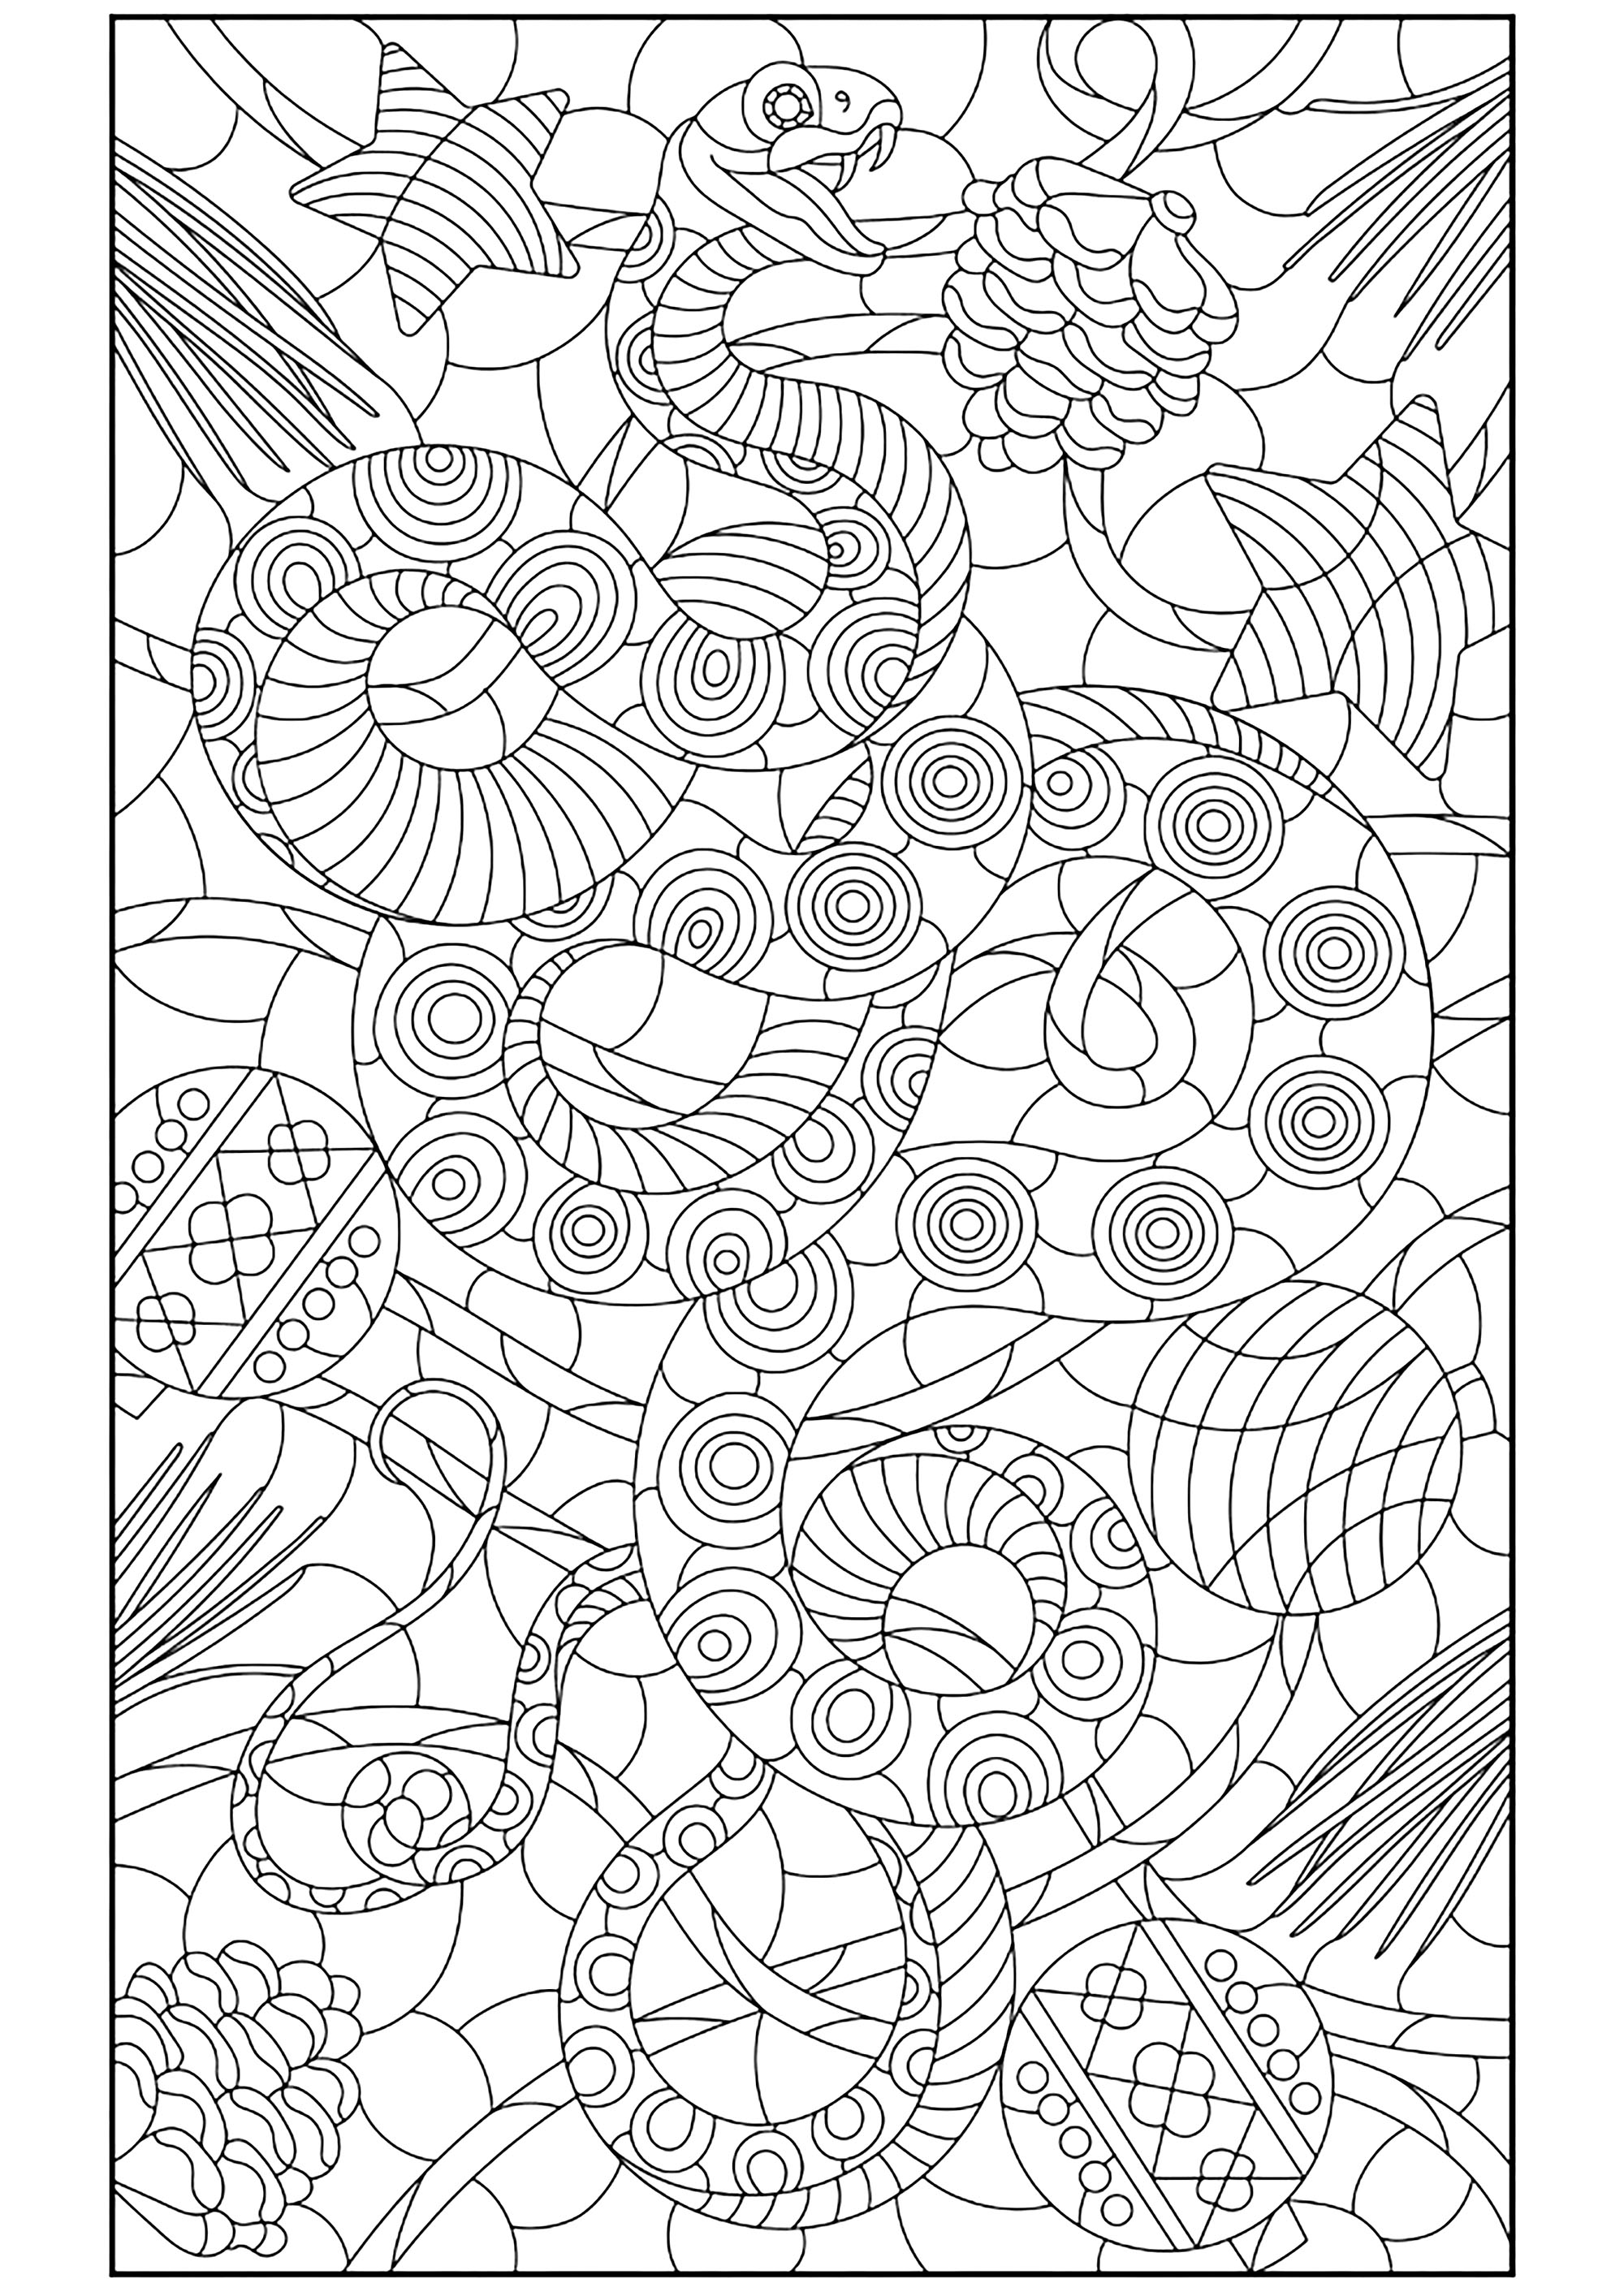 Serpent et motifs diversifiés. Un sublime coloriage dont le dessin a été réalisé avec une finesse extrême, Artiste : zagory   Source : 123rf